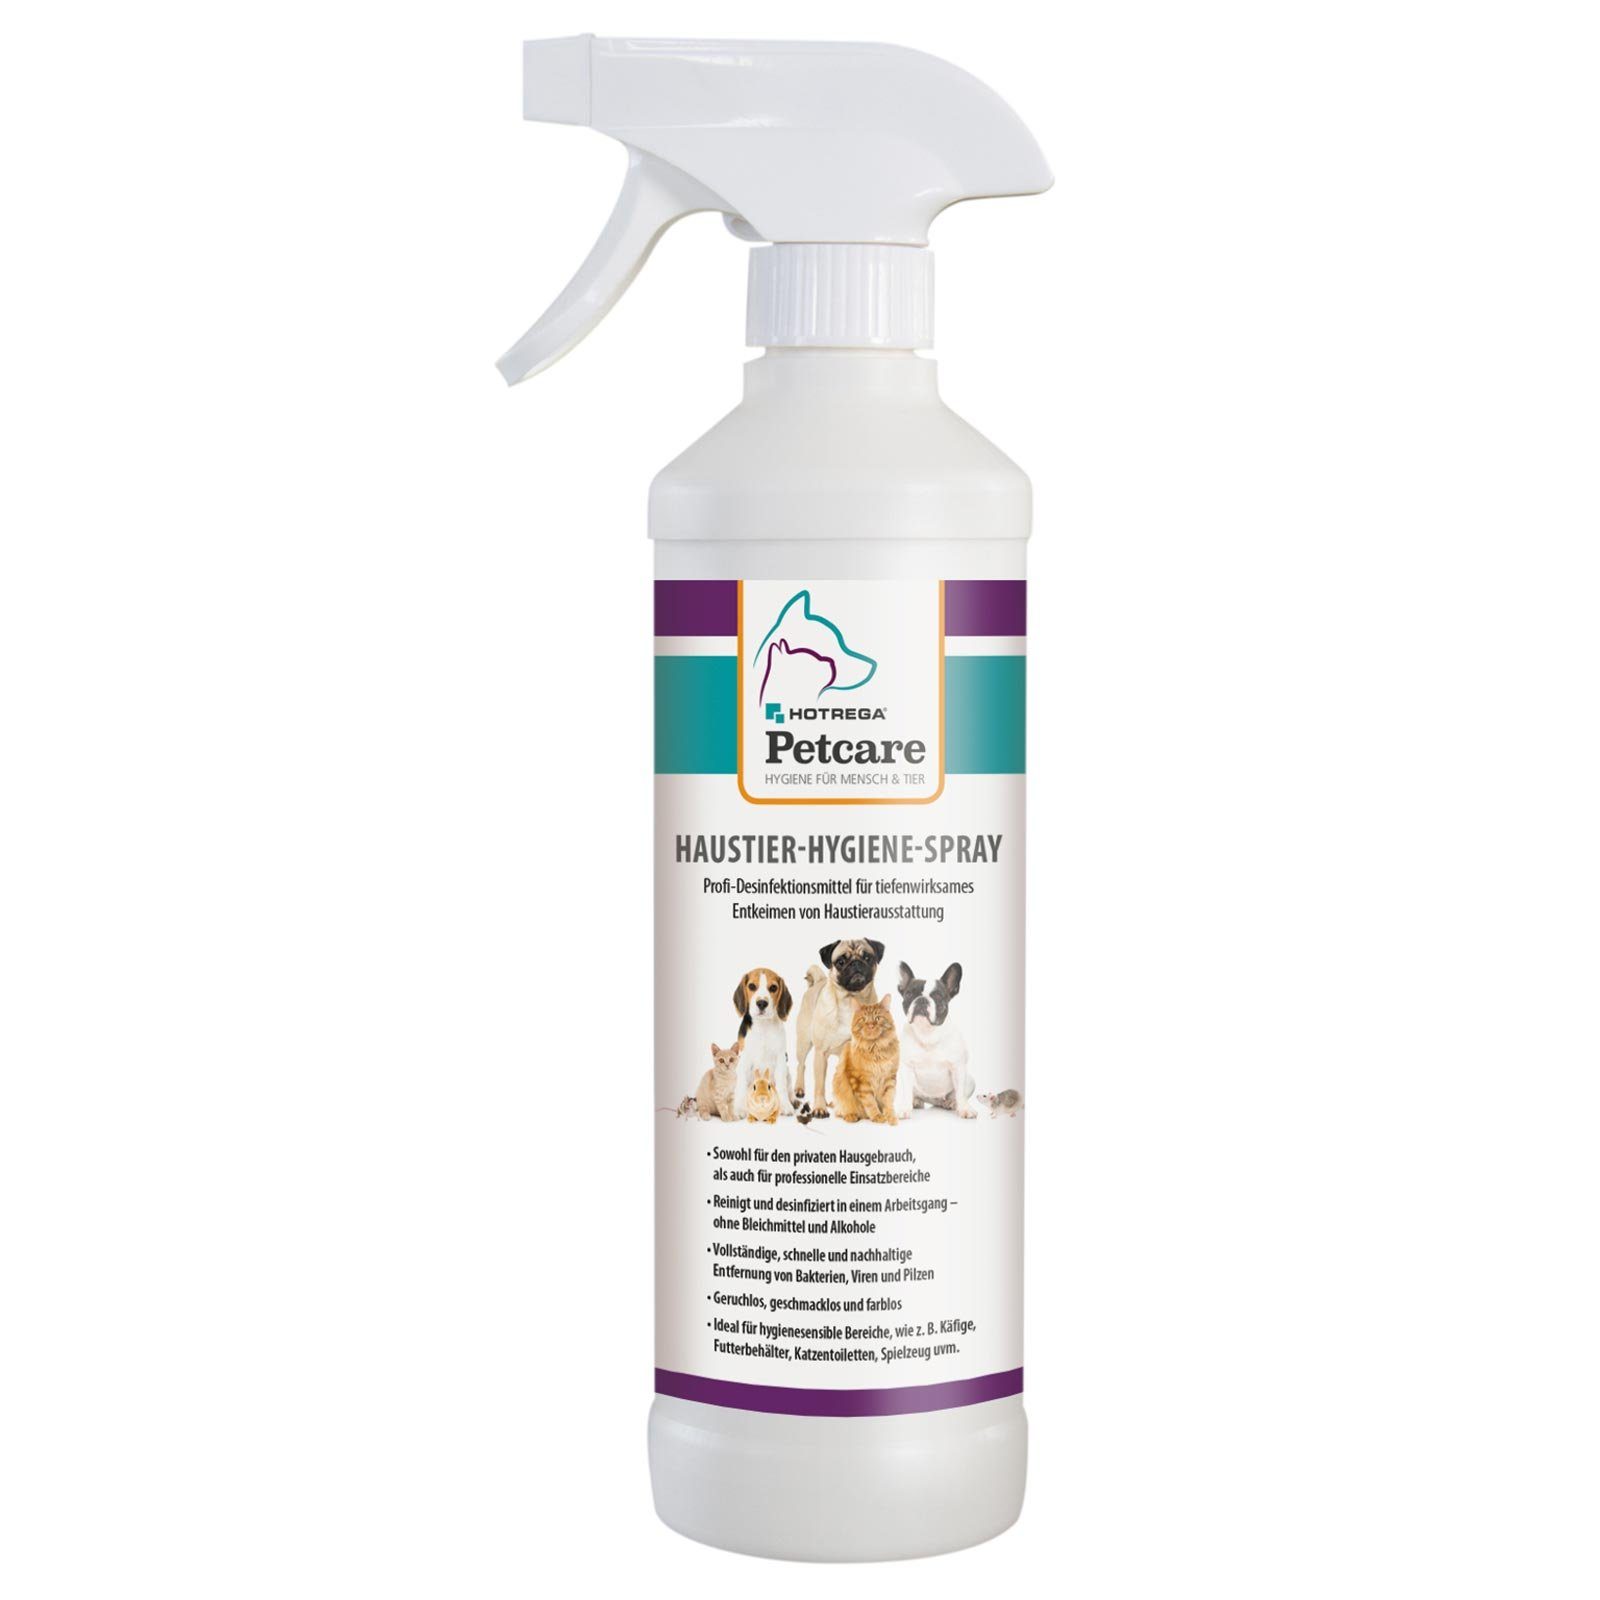 HOTREGA® Haustier-Hygiene-Spray Petcare 500 ml Universalreiniger | Allzweckreiniger